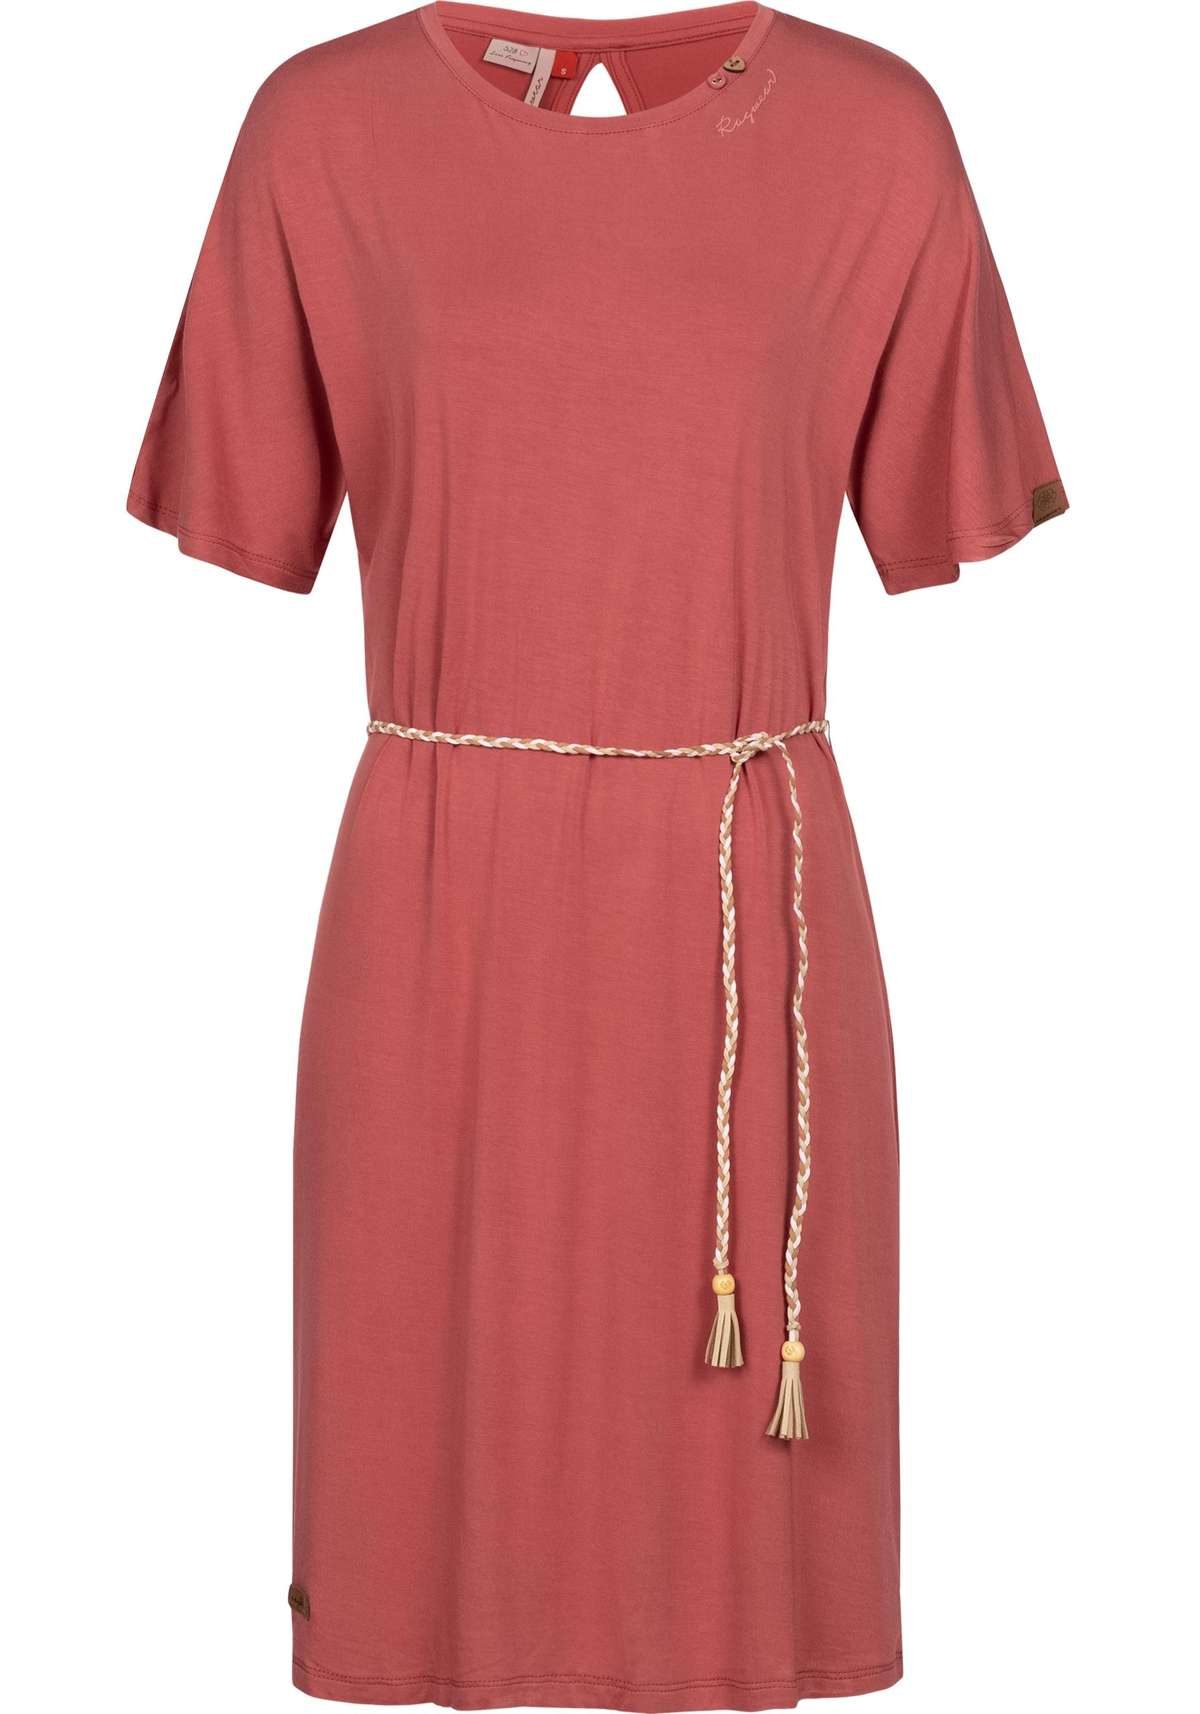 Платье из джерси, стильное платье-рубашка с плетеным поясом.